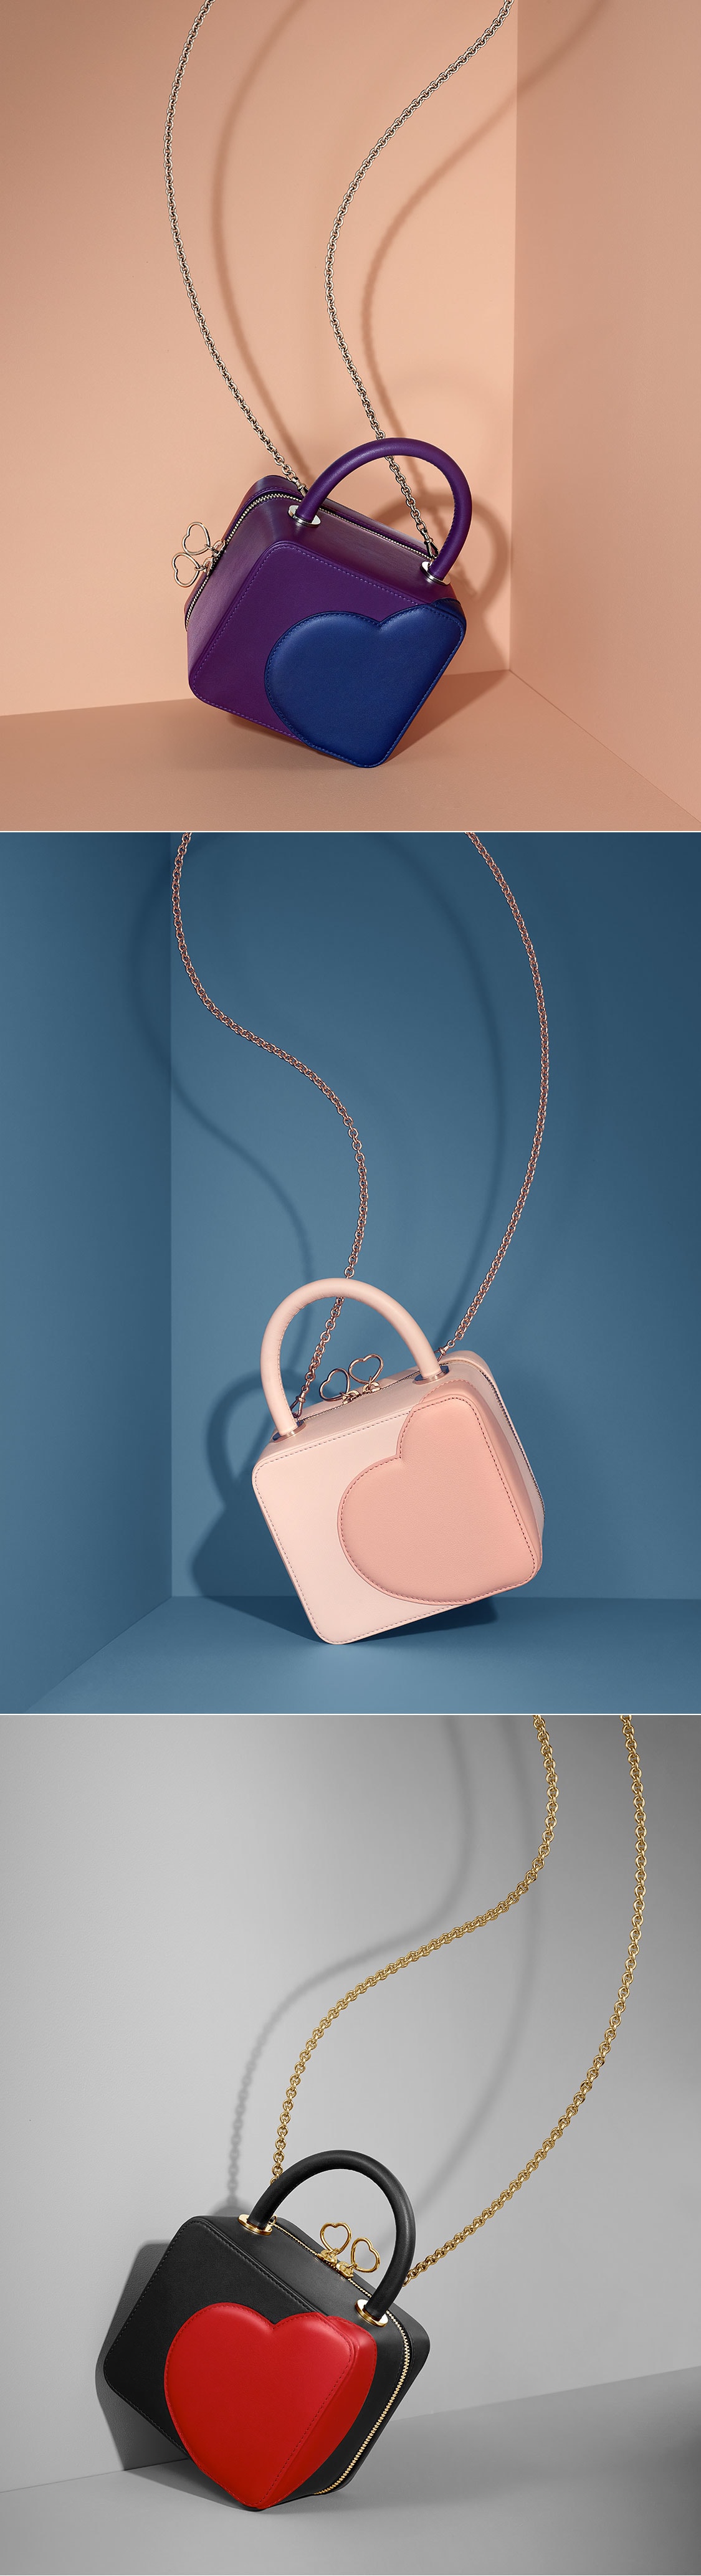 Chloë Sevigny x Chopard Luxus-Handtaschen